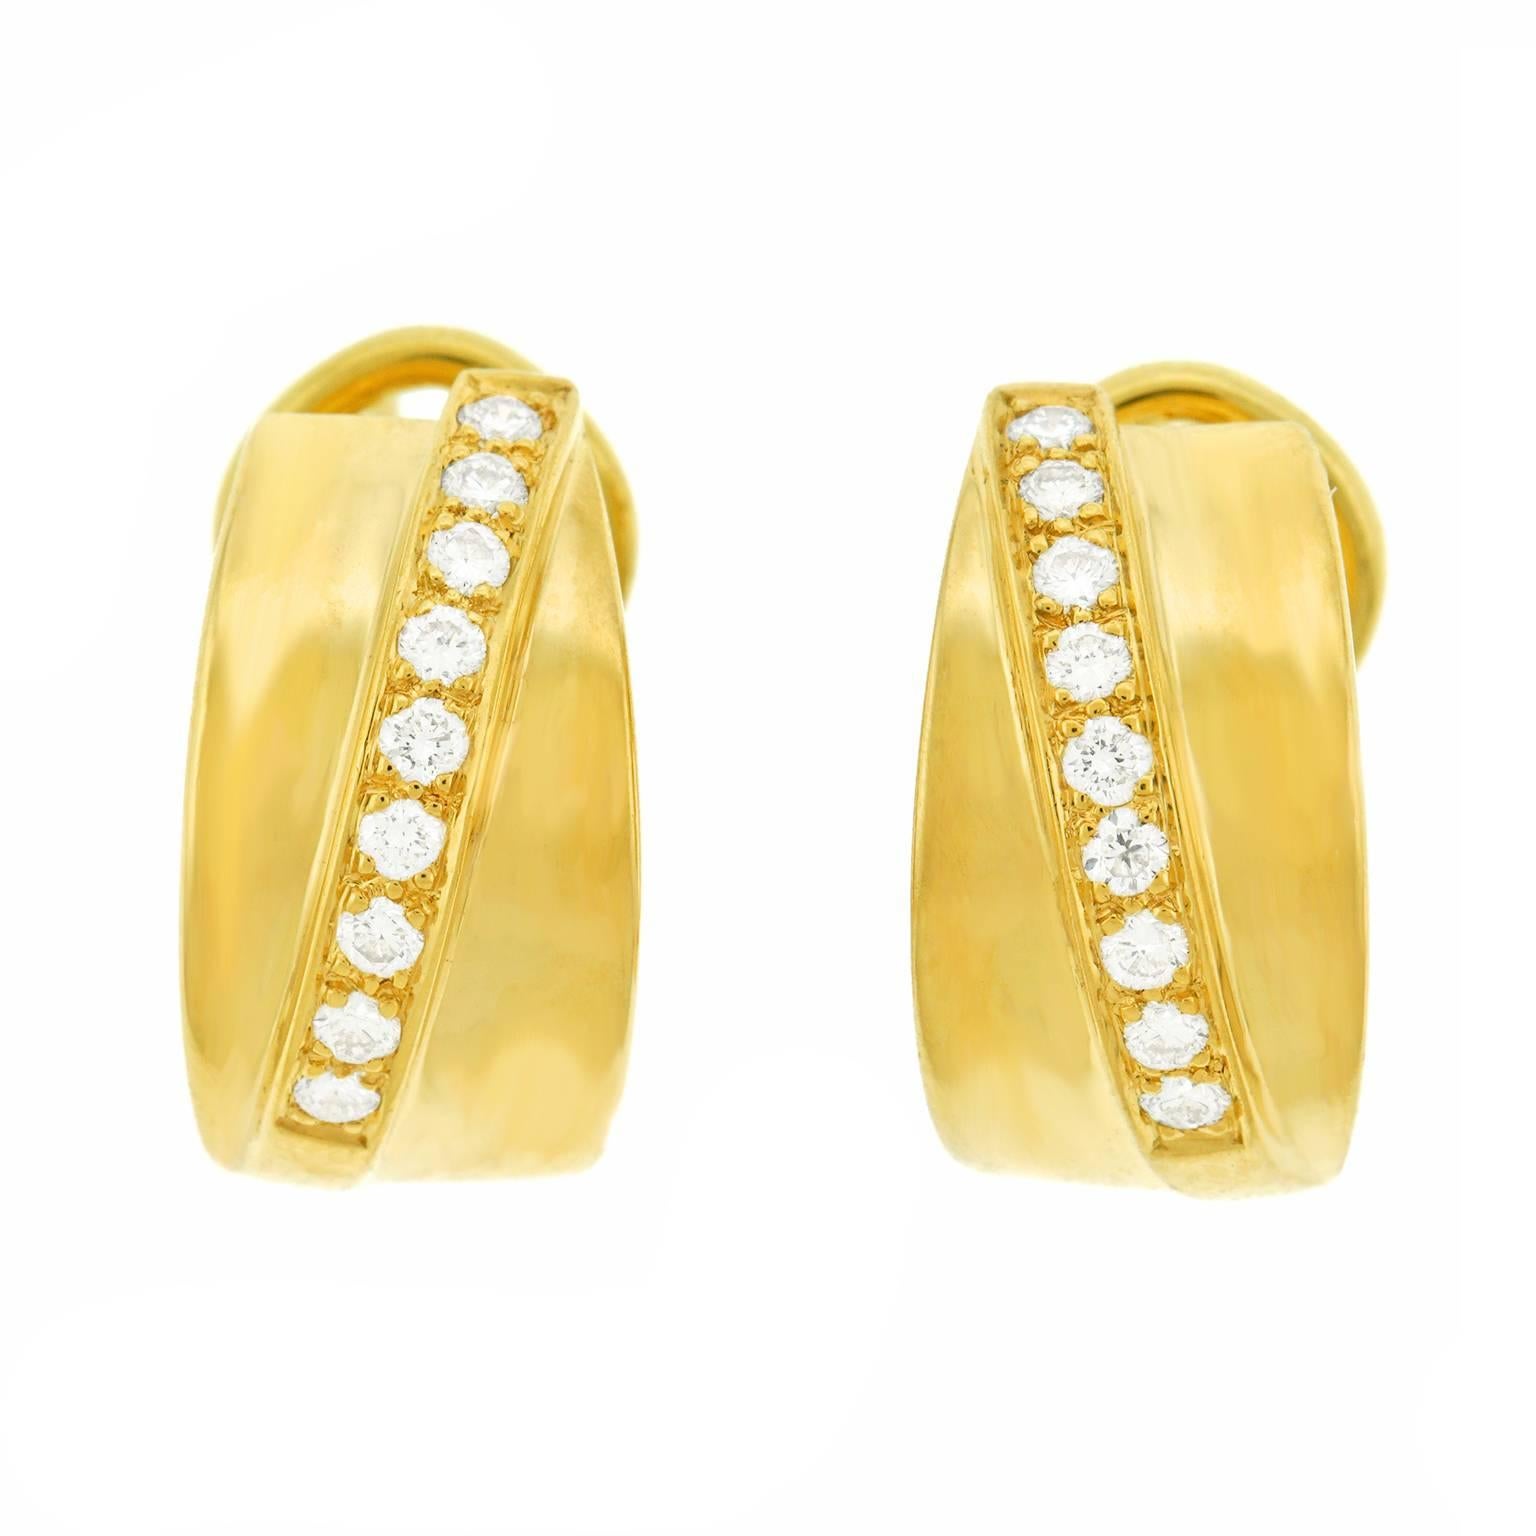 Tannler Diamond and Gold Earrings